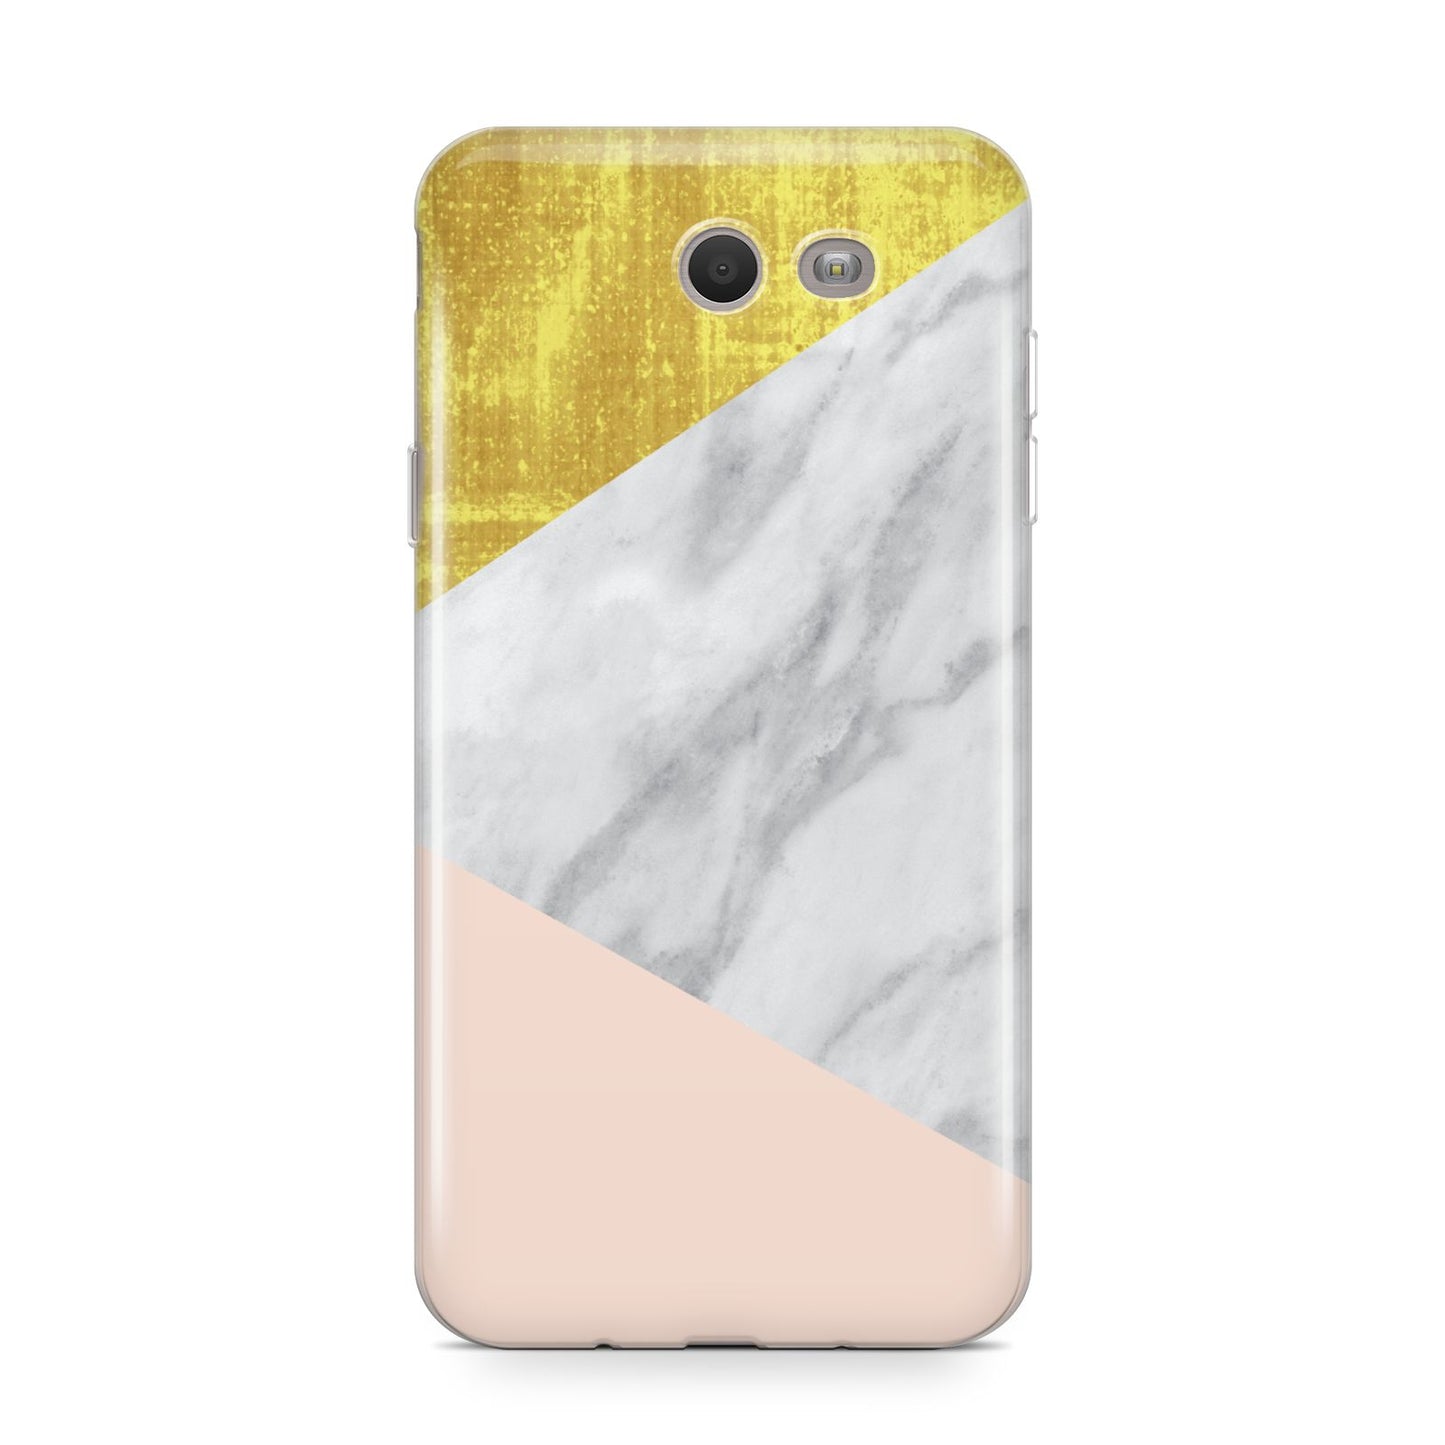 Marble White Gold Foil Peach Samsung Galaxy J7 2017 Case